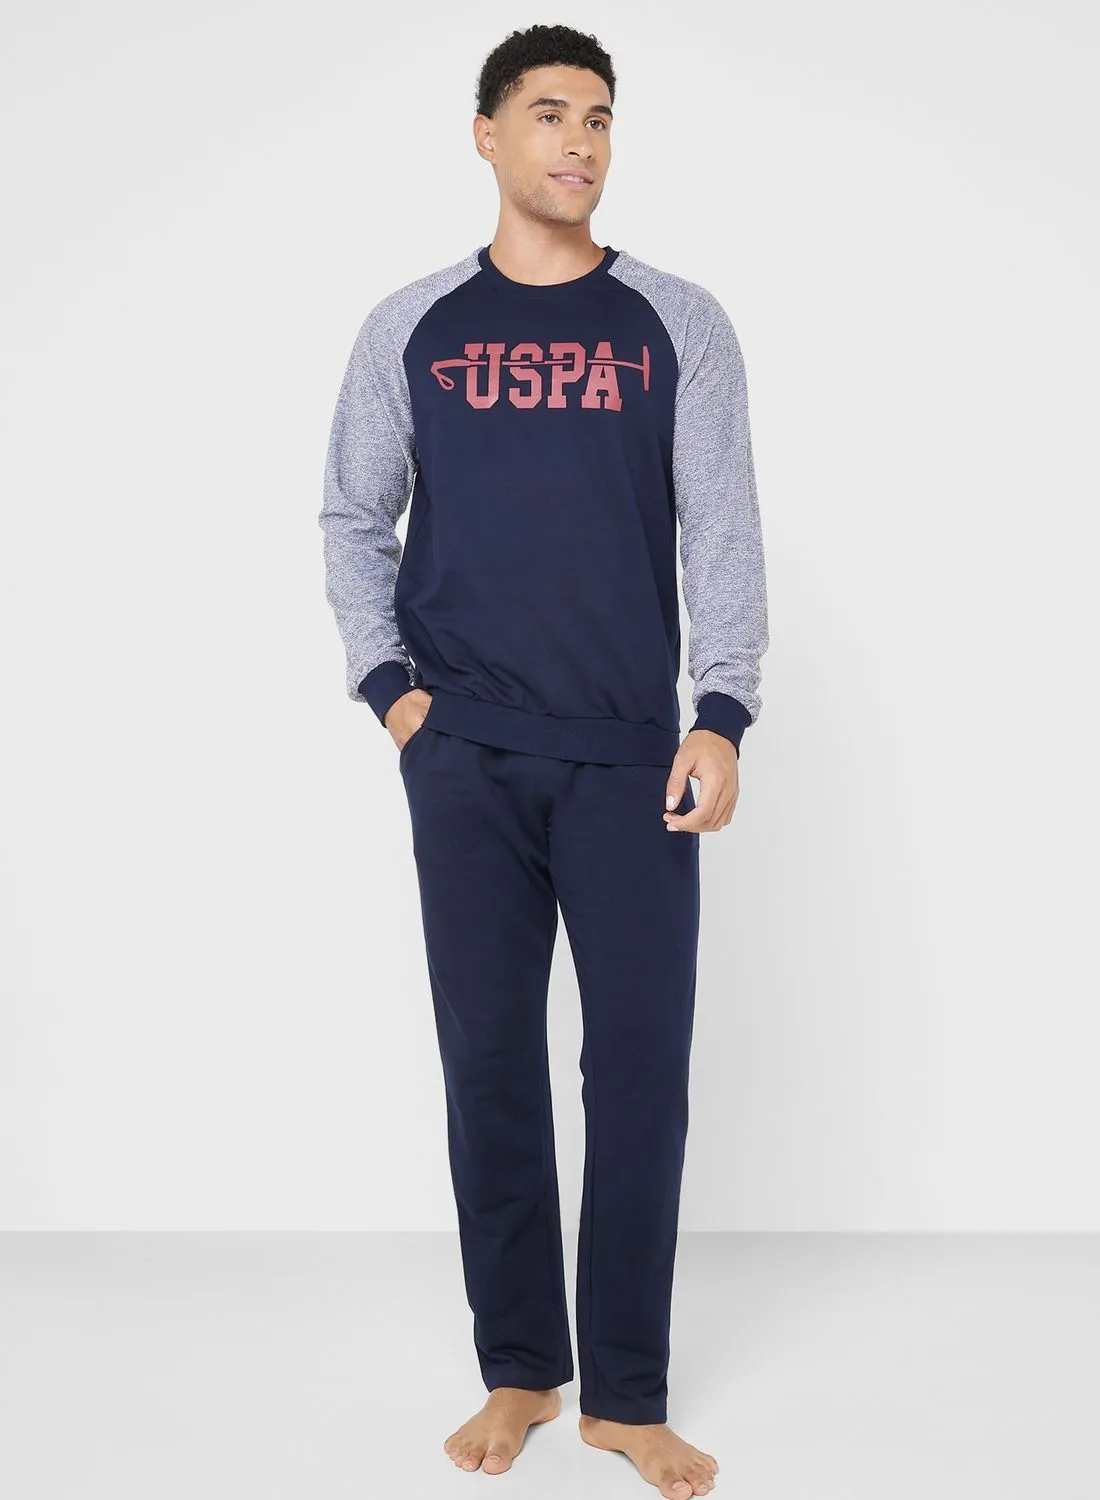 U.S. Polo Assn. Crew Neck T-Shirt Pyjama Set